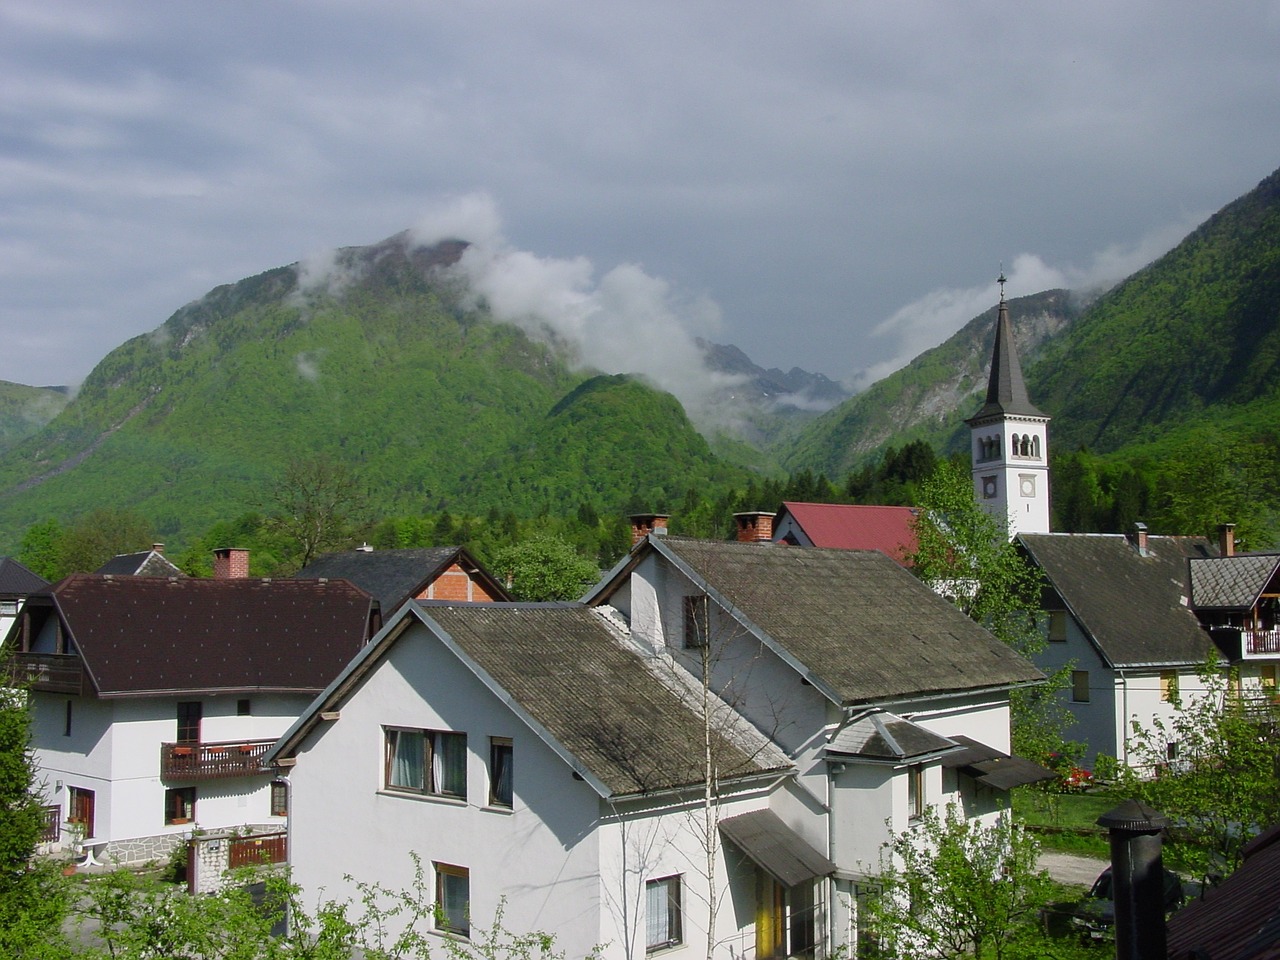 Slovenci razvijaju mrežu pametnih sela, podstiču mlade da tu i ostanu